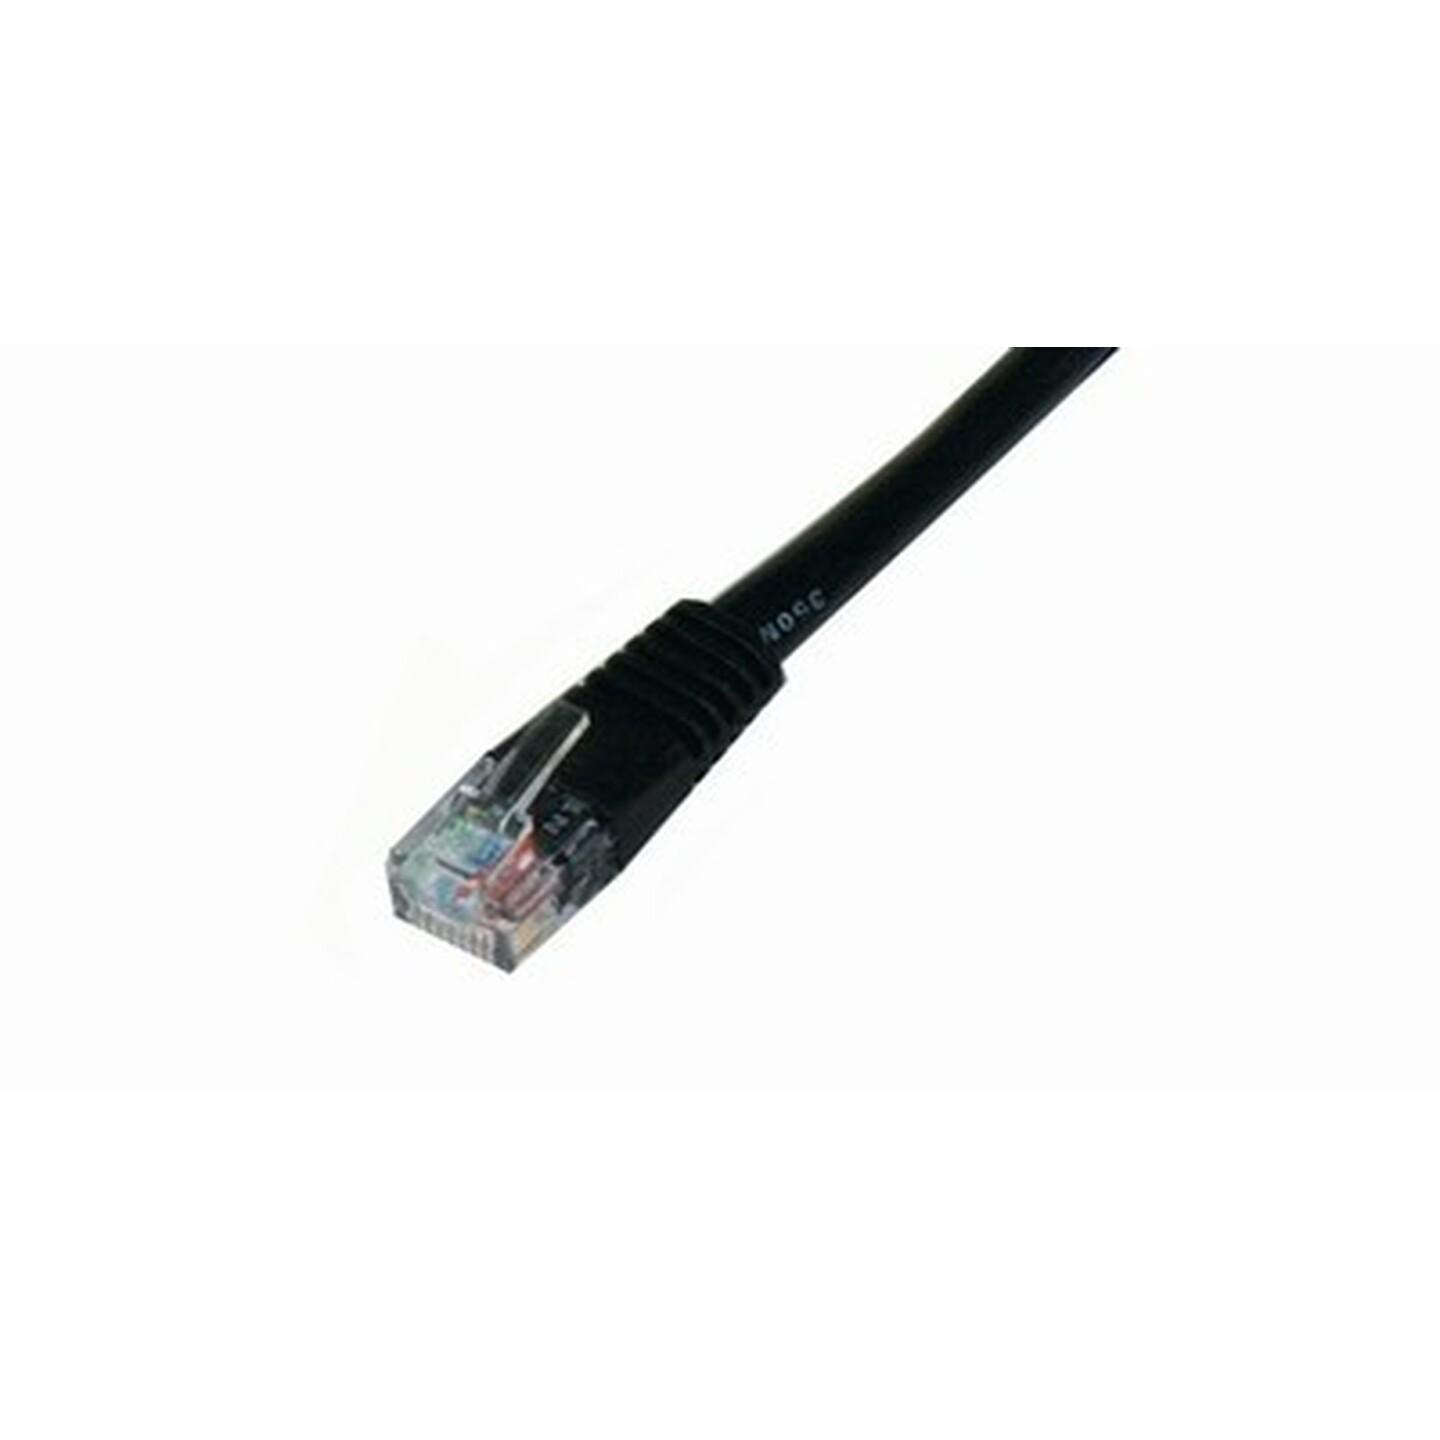 Cat 5E Crossover Cable 5m Black